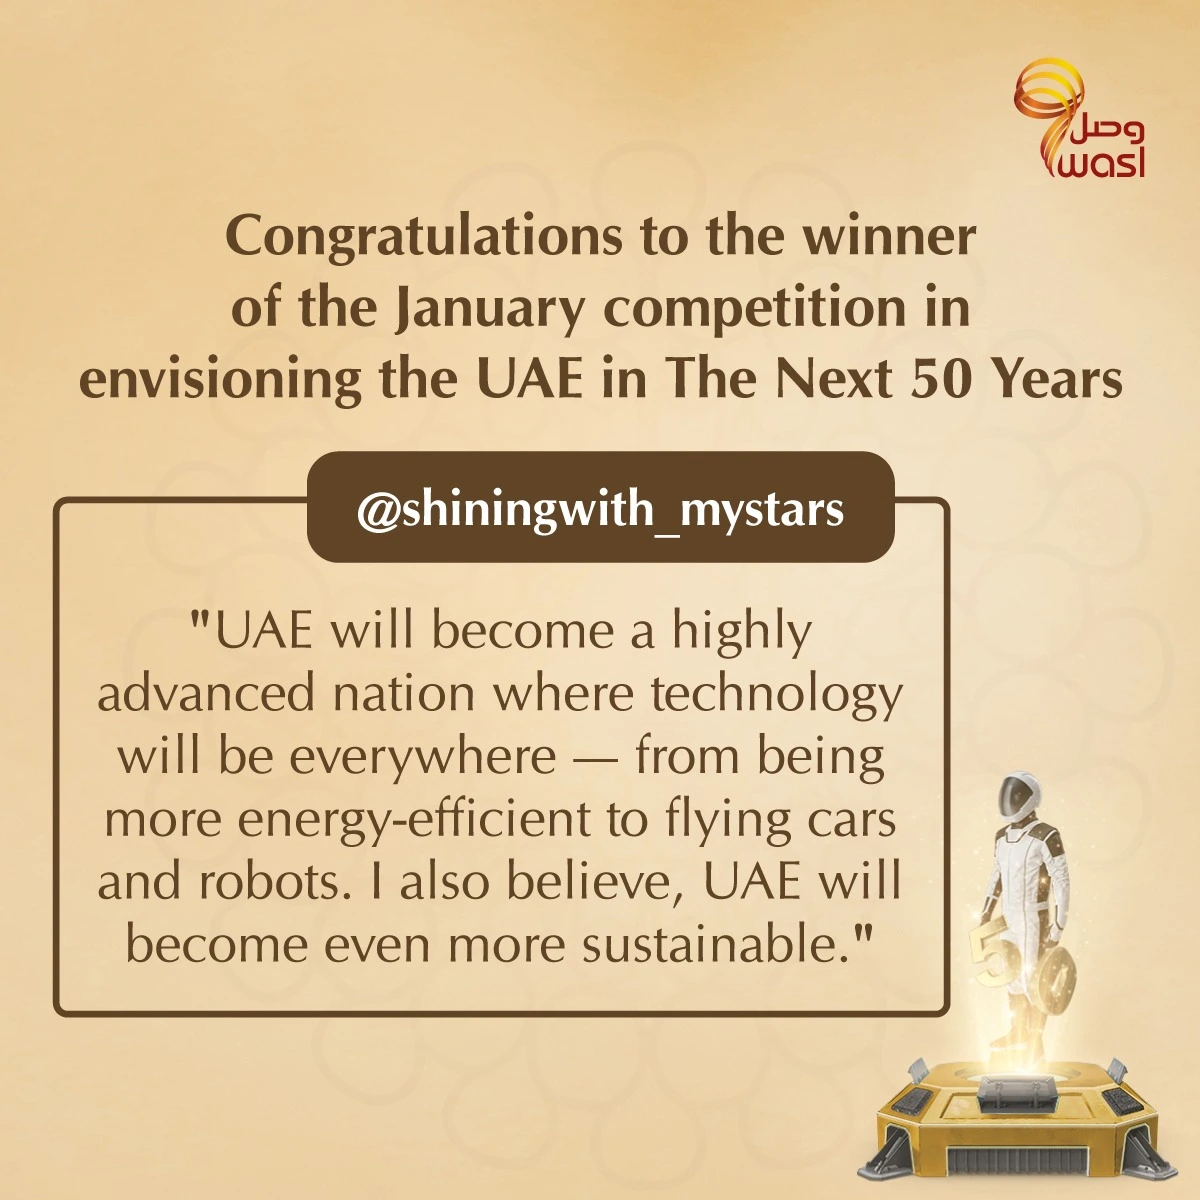 Imagining the UAE in the future